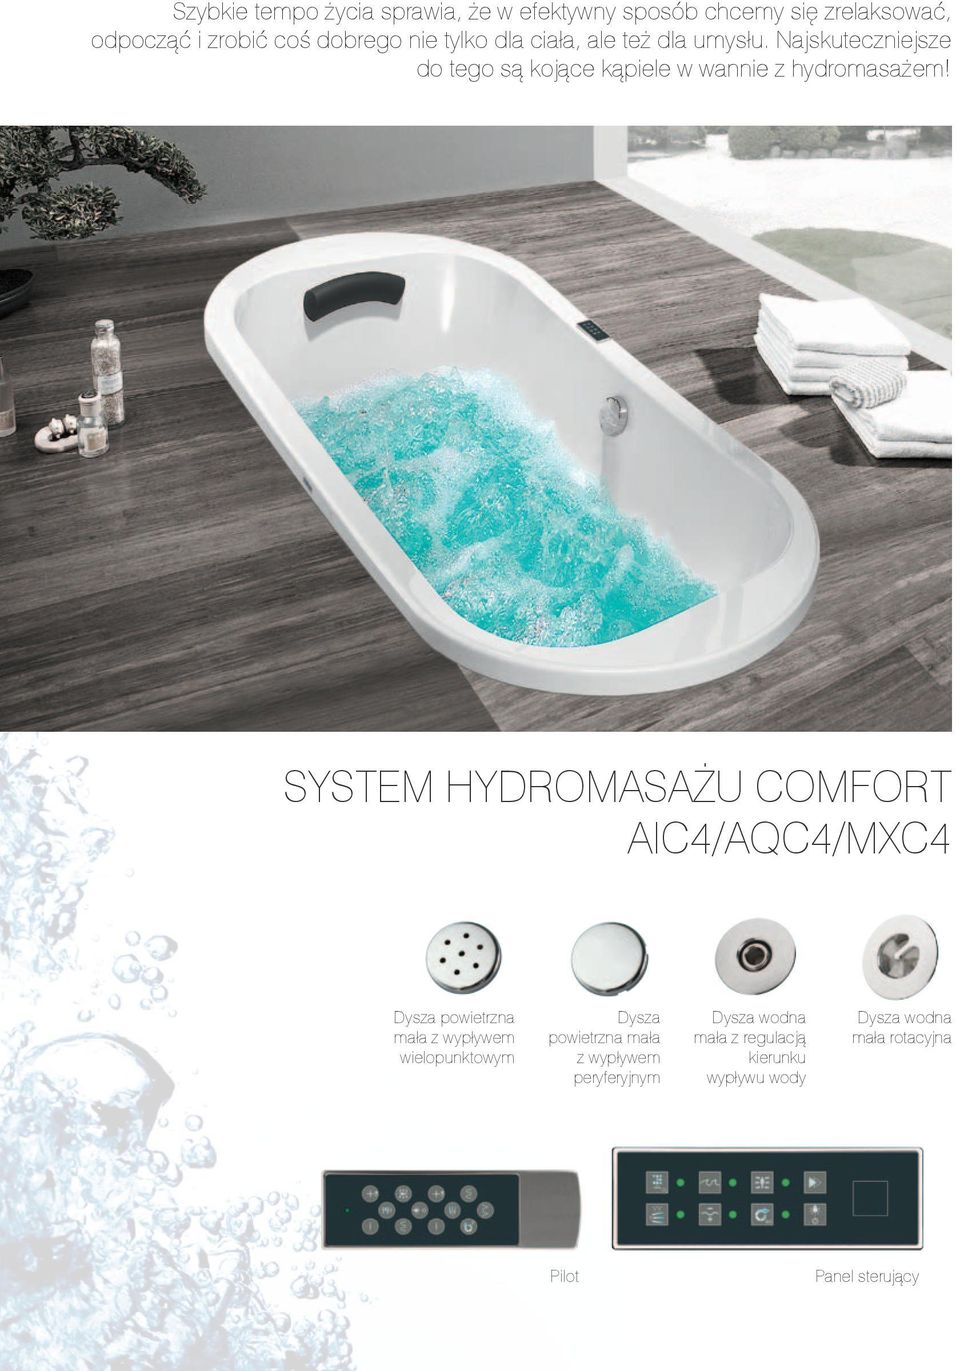 Najskuteczniejsze do tego są kojące kąpiele w wannie z hydromasażem!